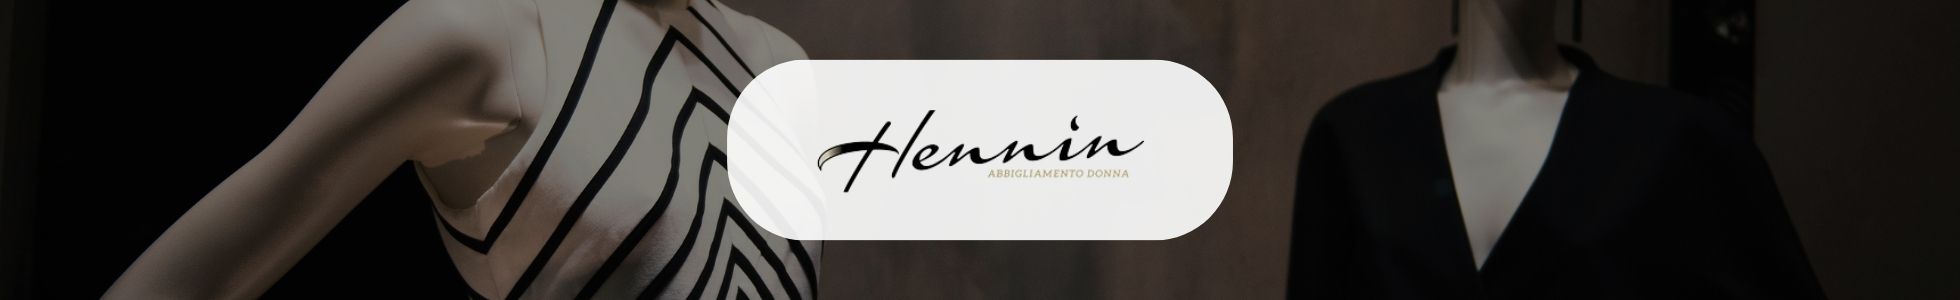 Atelier Hennin – Shop abbigliamento